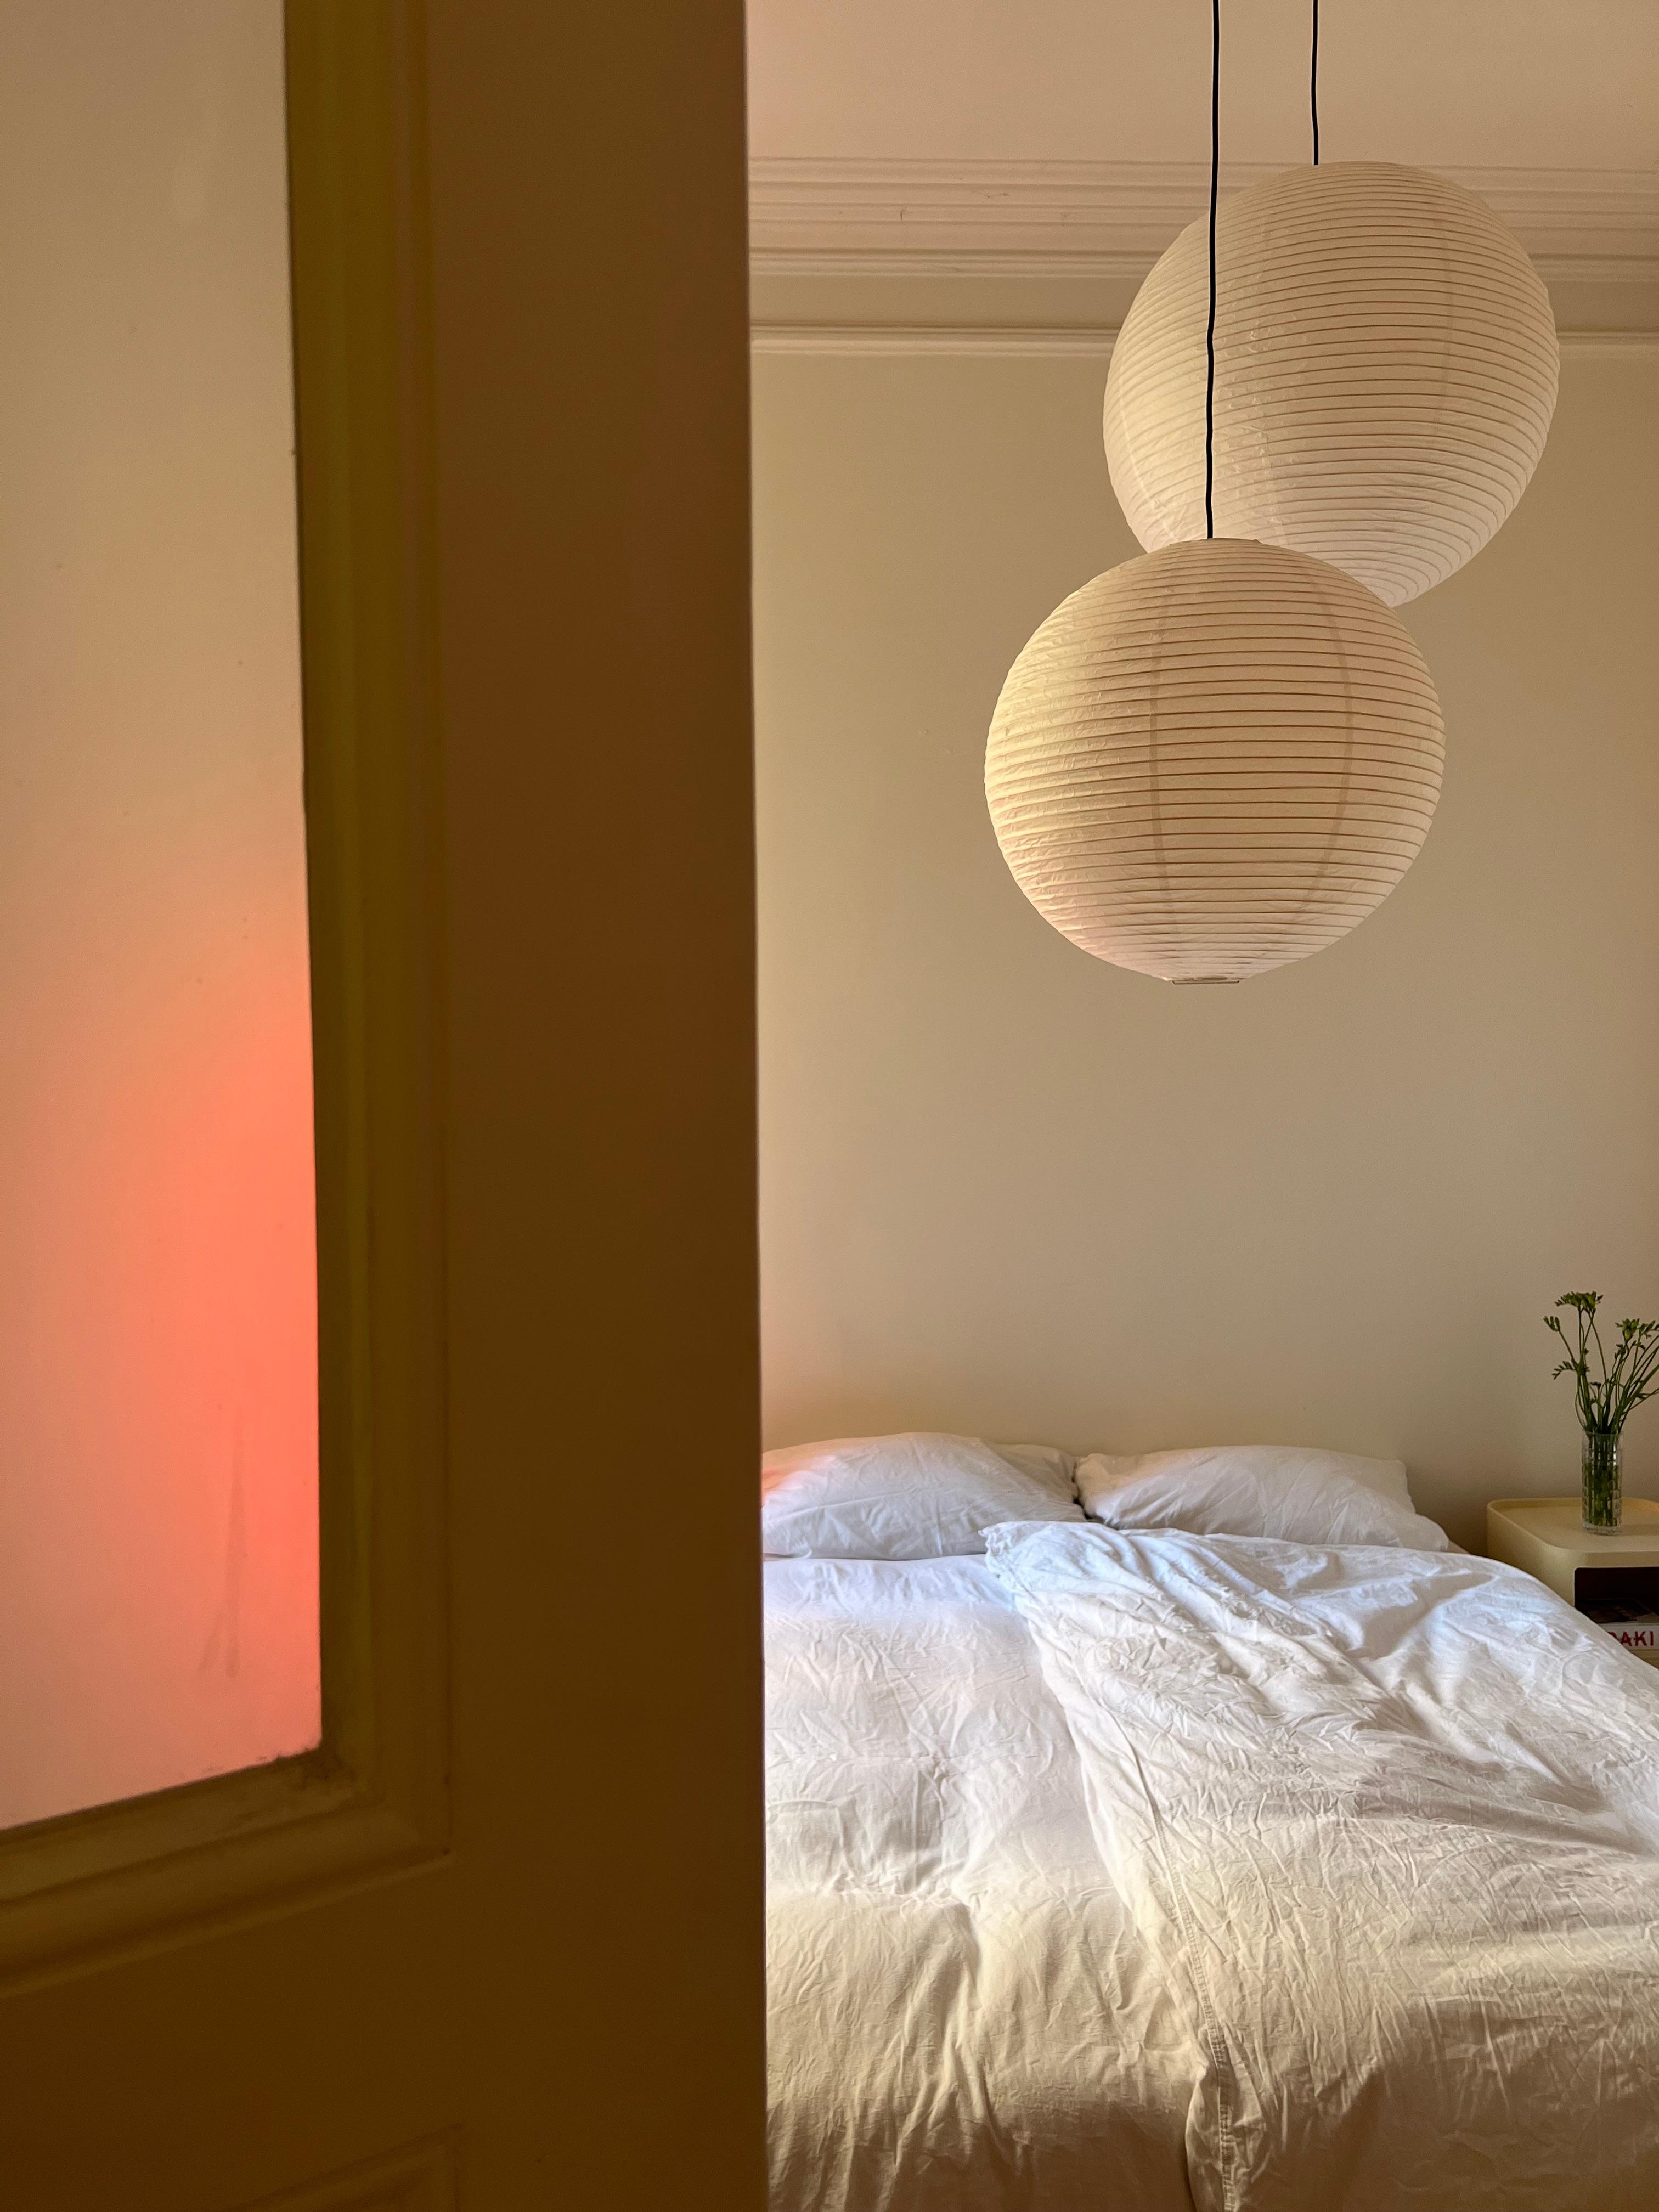 Wo Träume entstehen ✨

#schlafzimmer #schlafzimmerinspo #minimalistisch #interior #papierlampen 